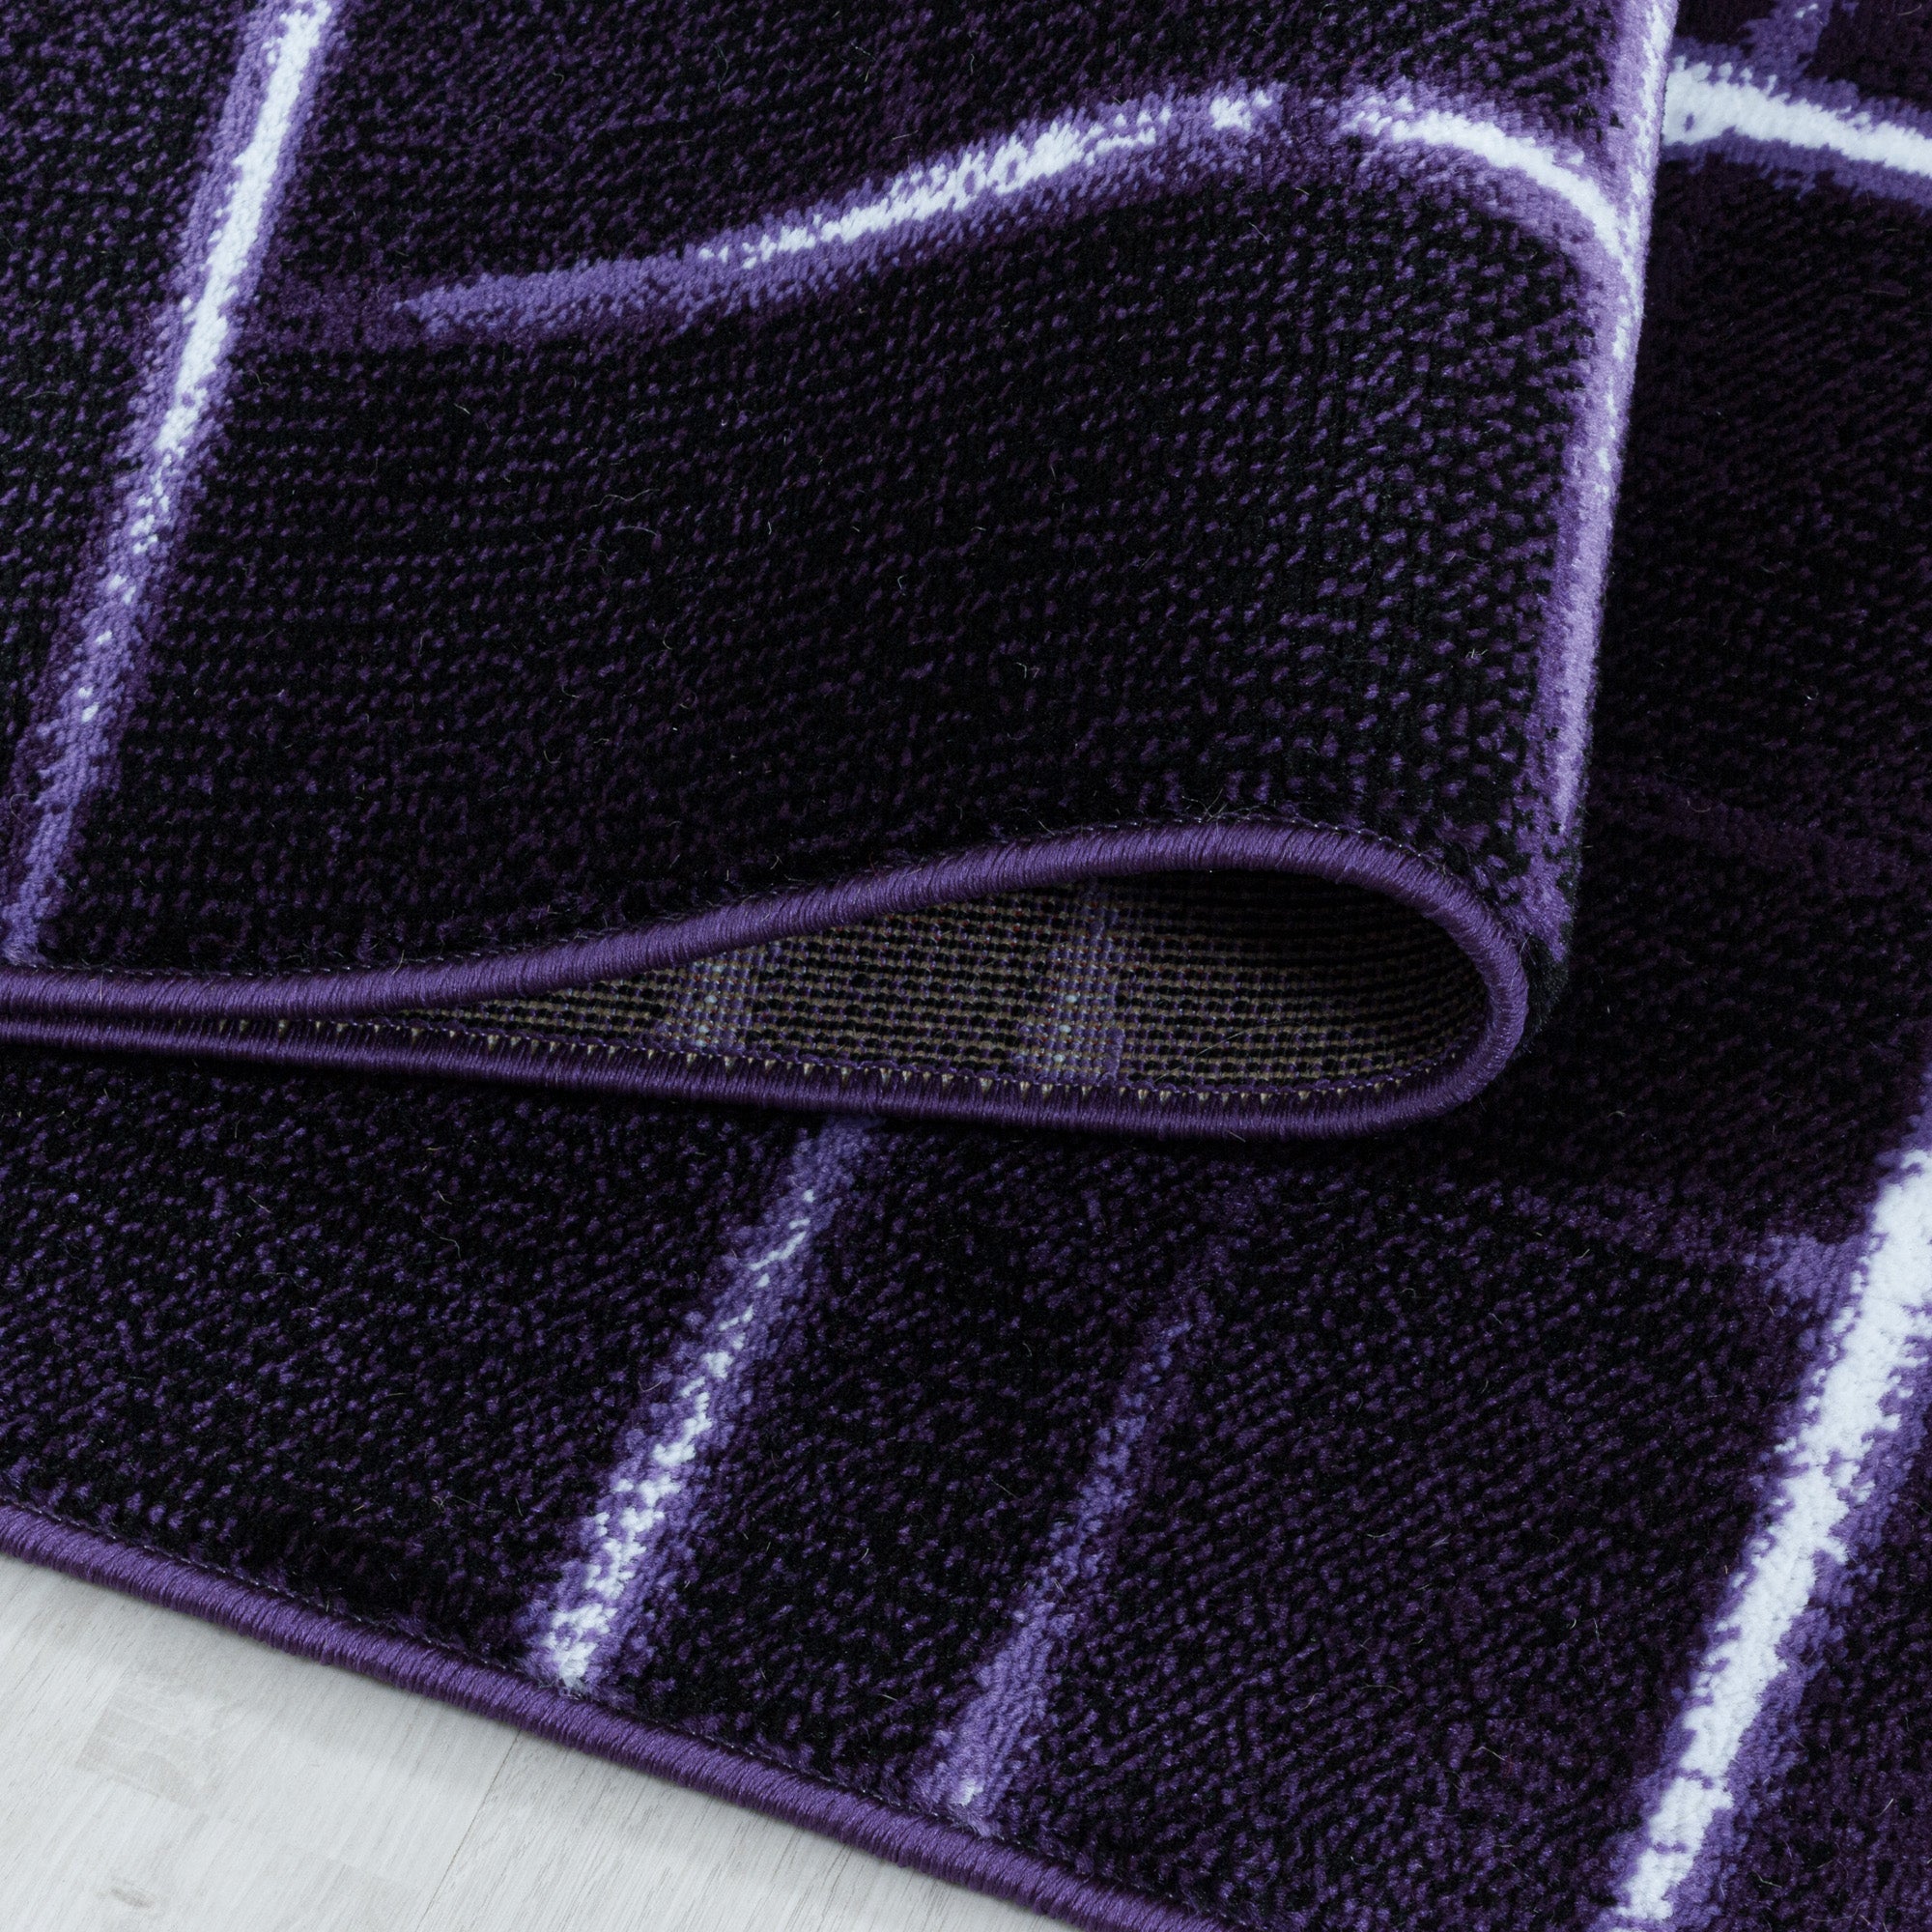 Kurzflor Design Teppich Wohnzimmerteppich Gitter Muster Soft Flor Lila